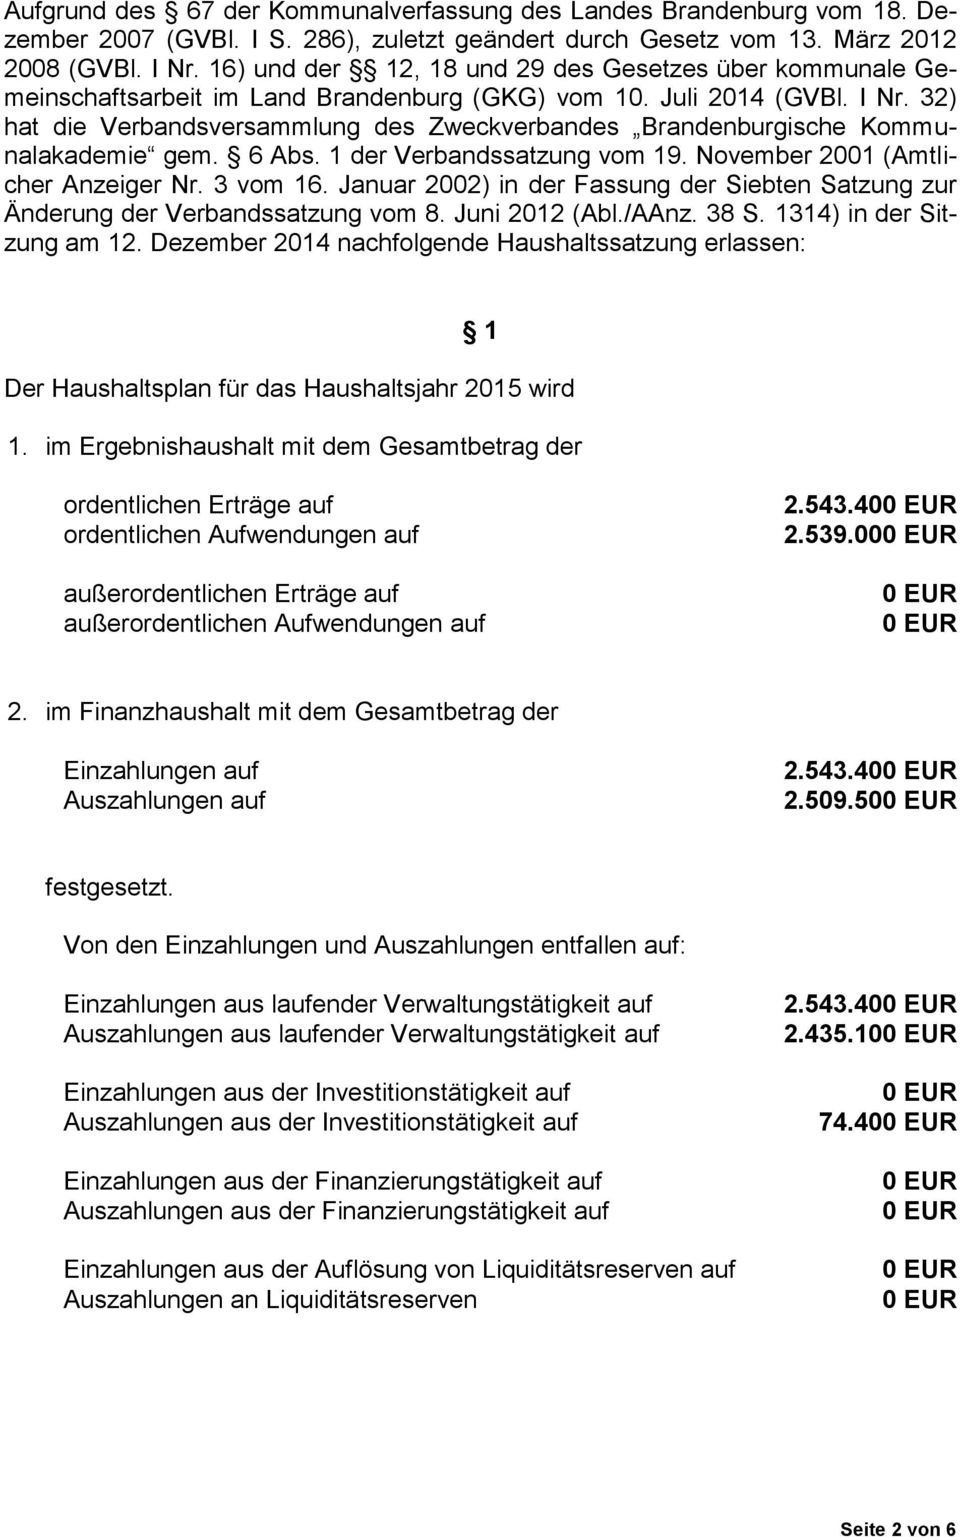 32) hat die Verbandsversammlung des Zweckverbandes Brandenburgische Kommunalakademie gem. 6 Abs. 1 der Verbandssatzung vom 19. November 2001 (Amtlicher Anzeiger Nr. 3 vom 16.